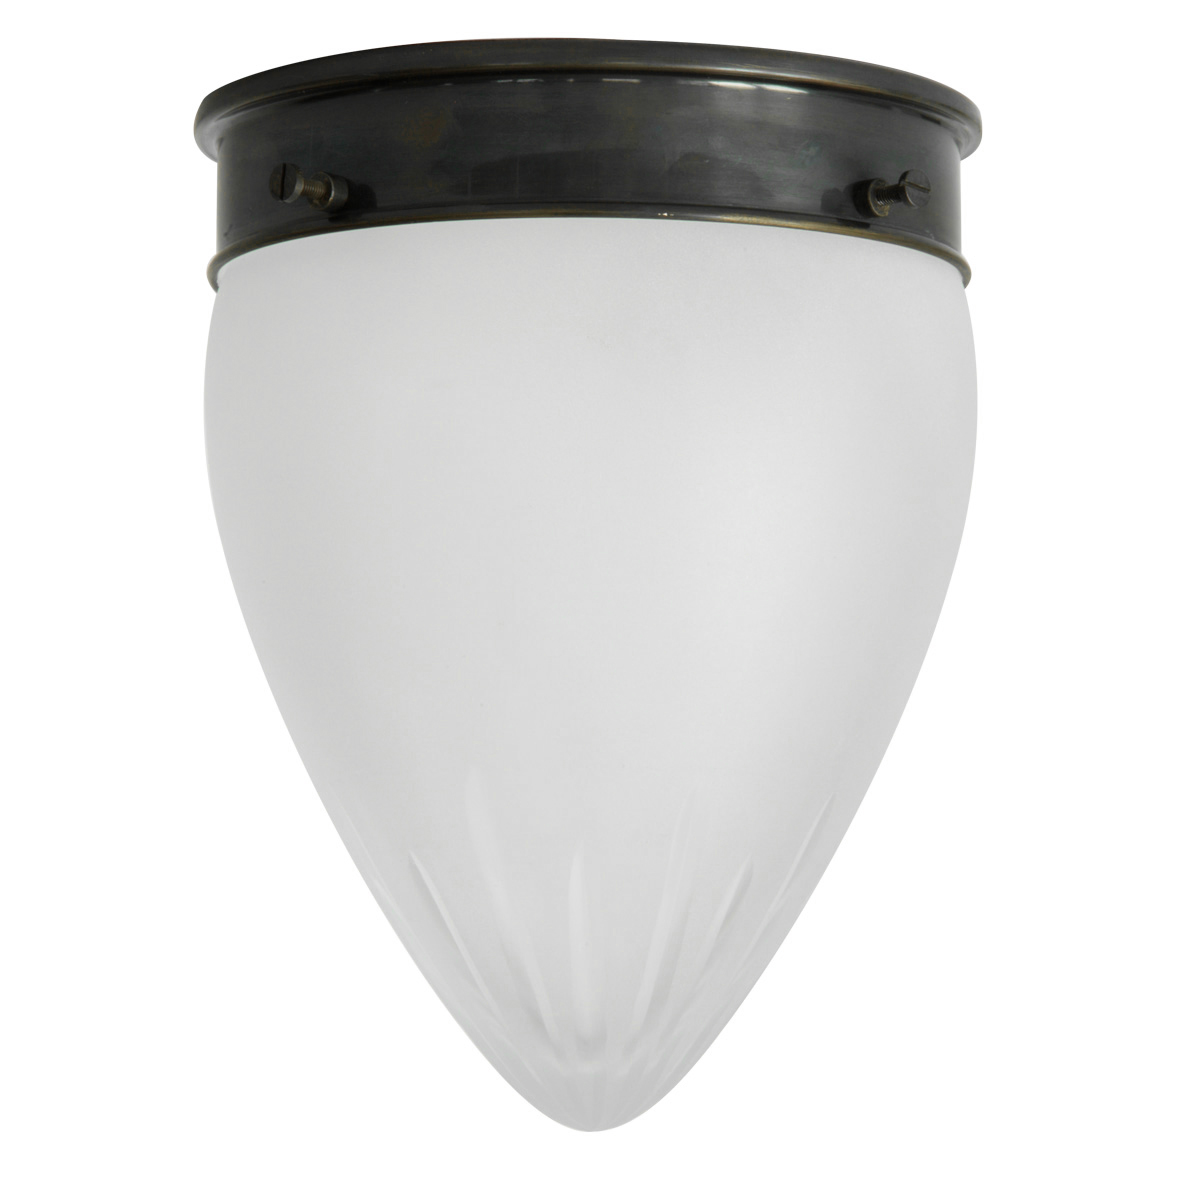 Spitzglas-Deckenlampe mit Sternschliff-Satinglas Ø 16 cm: Schlanke Deckenleuchte, abgebildet mit glanzvernickeltem Deckenteil